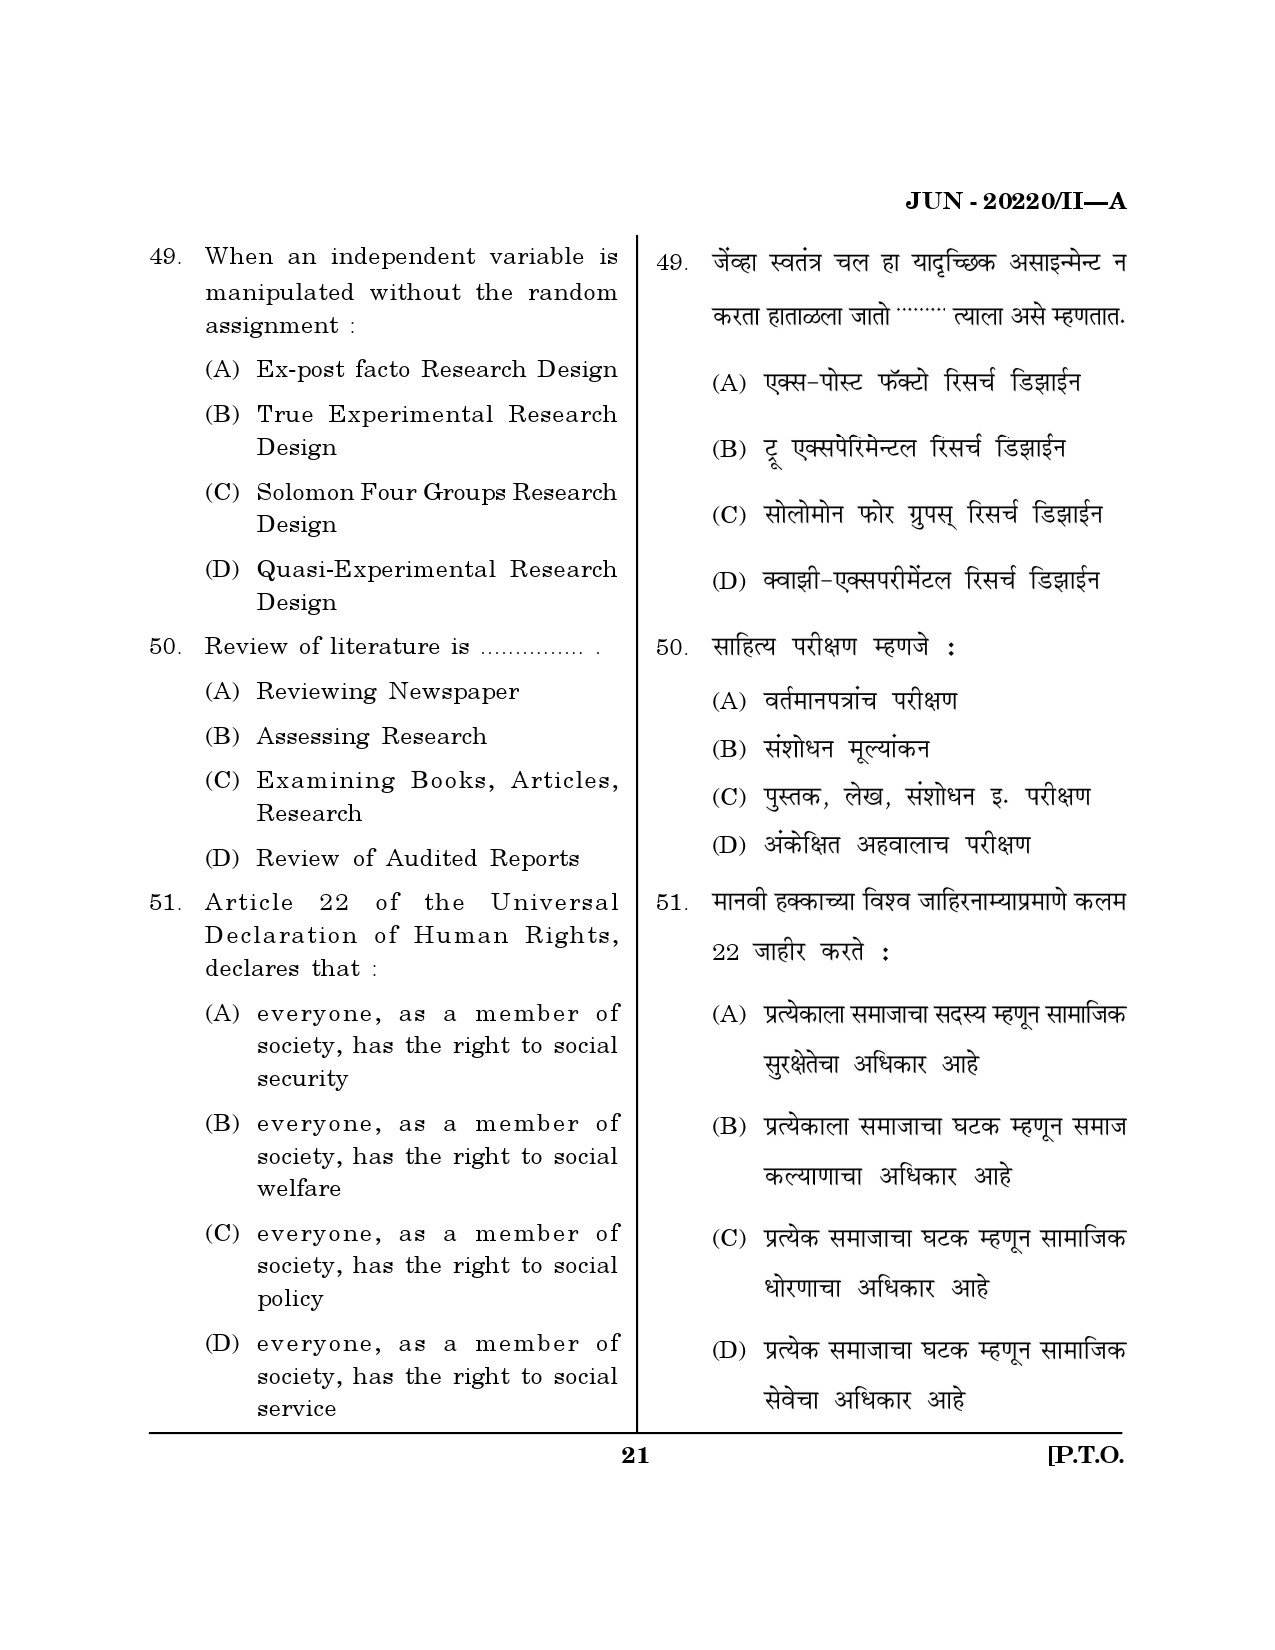 Maharashtra SET Social Work Question Paper II June 2020 20